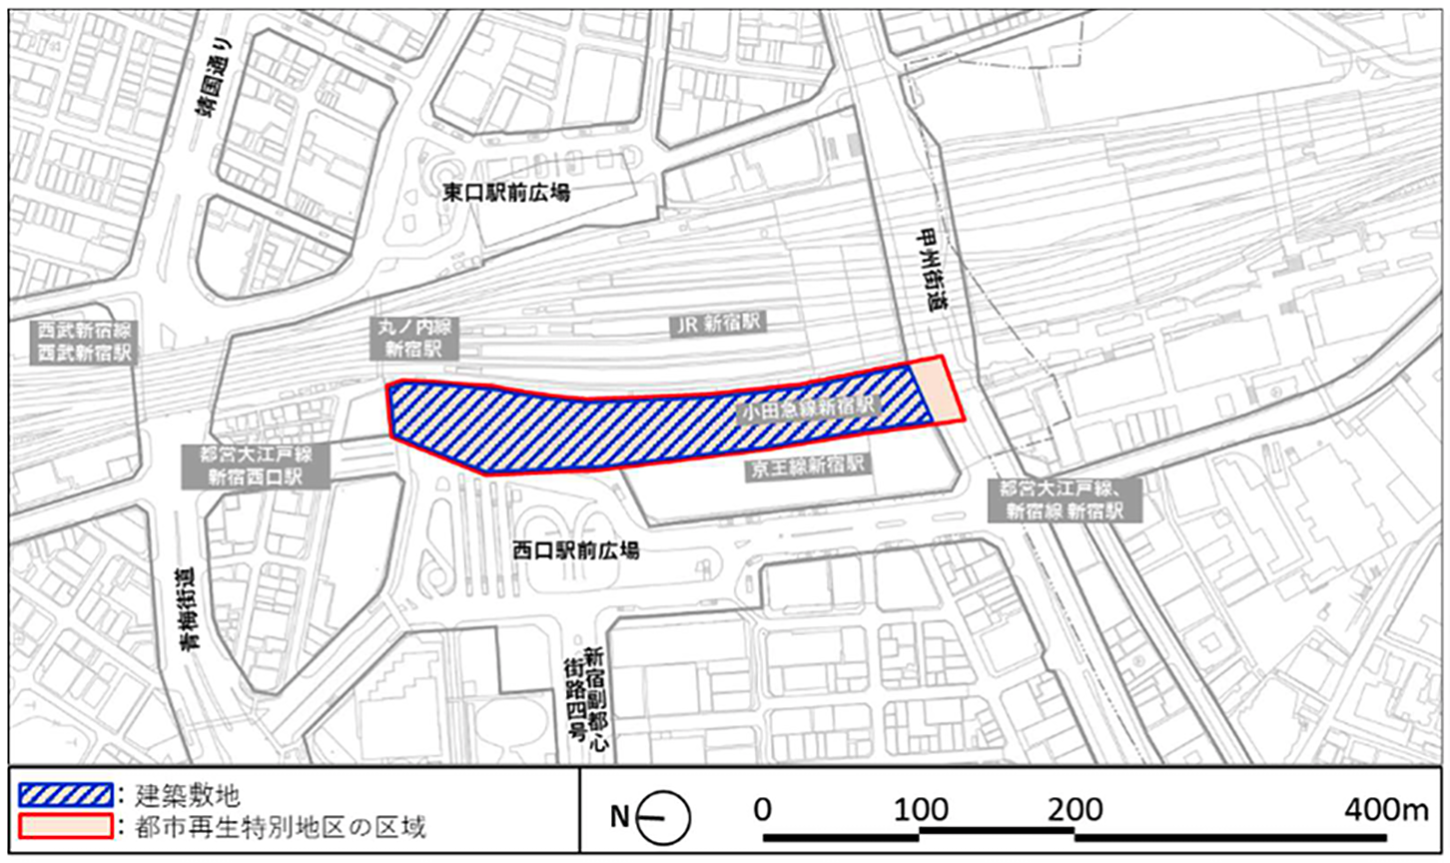 新宿駅西口地区開発計画位置図